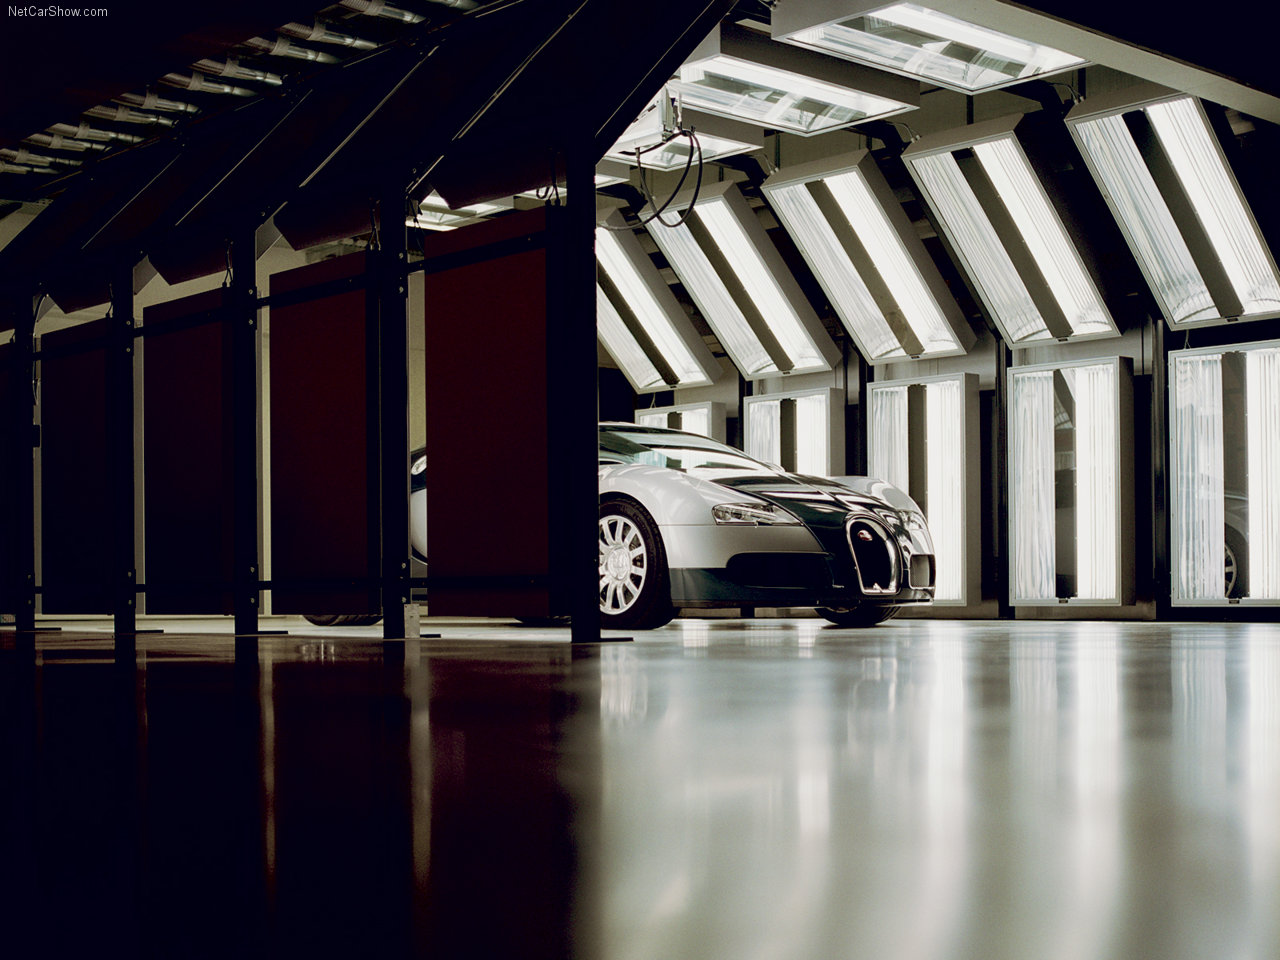 Bugatti Veyron Picture